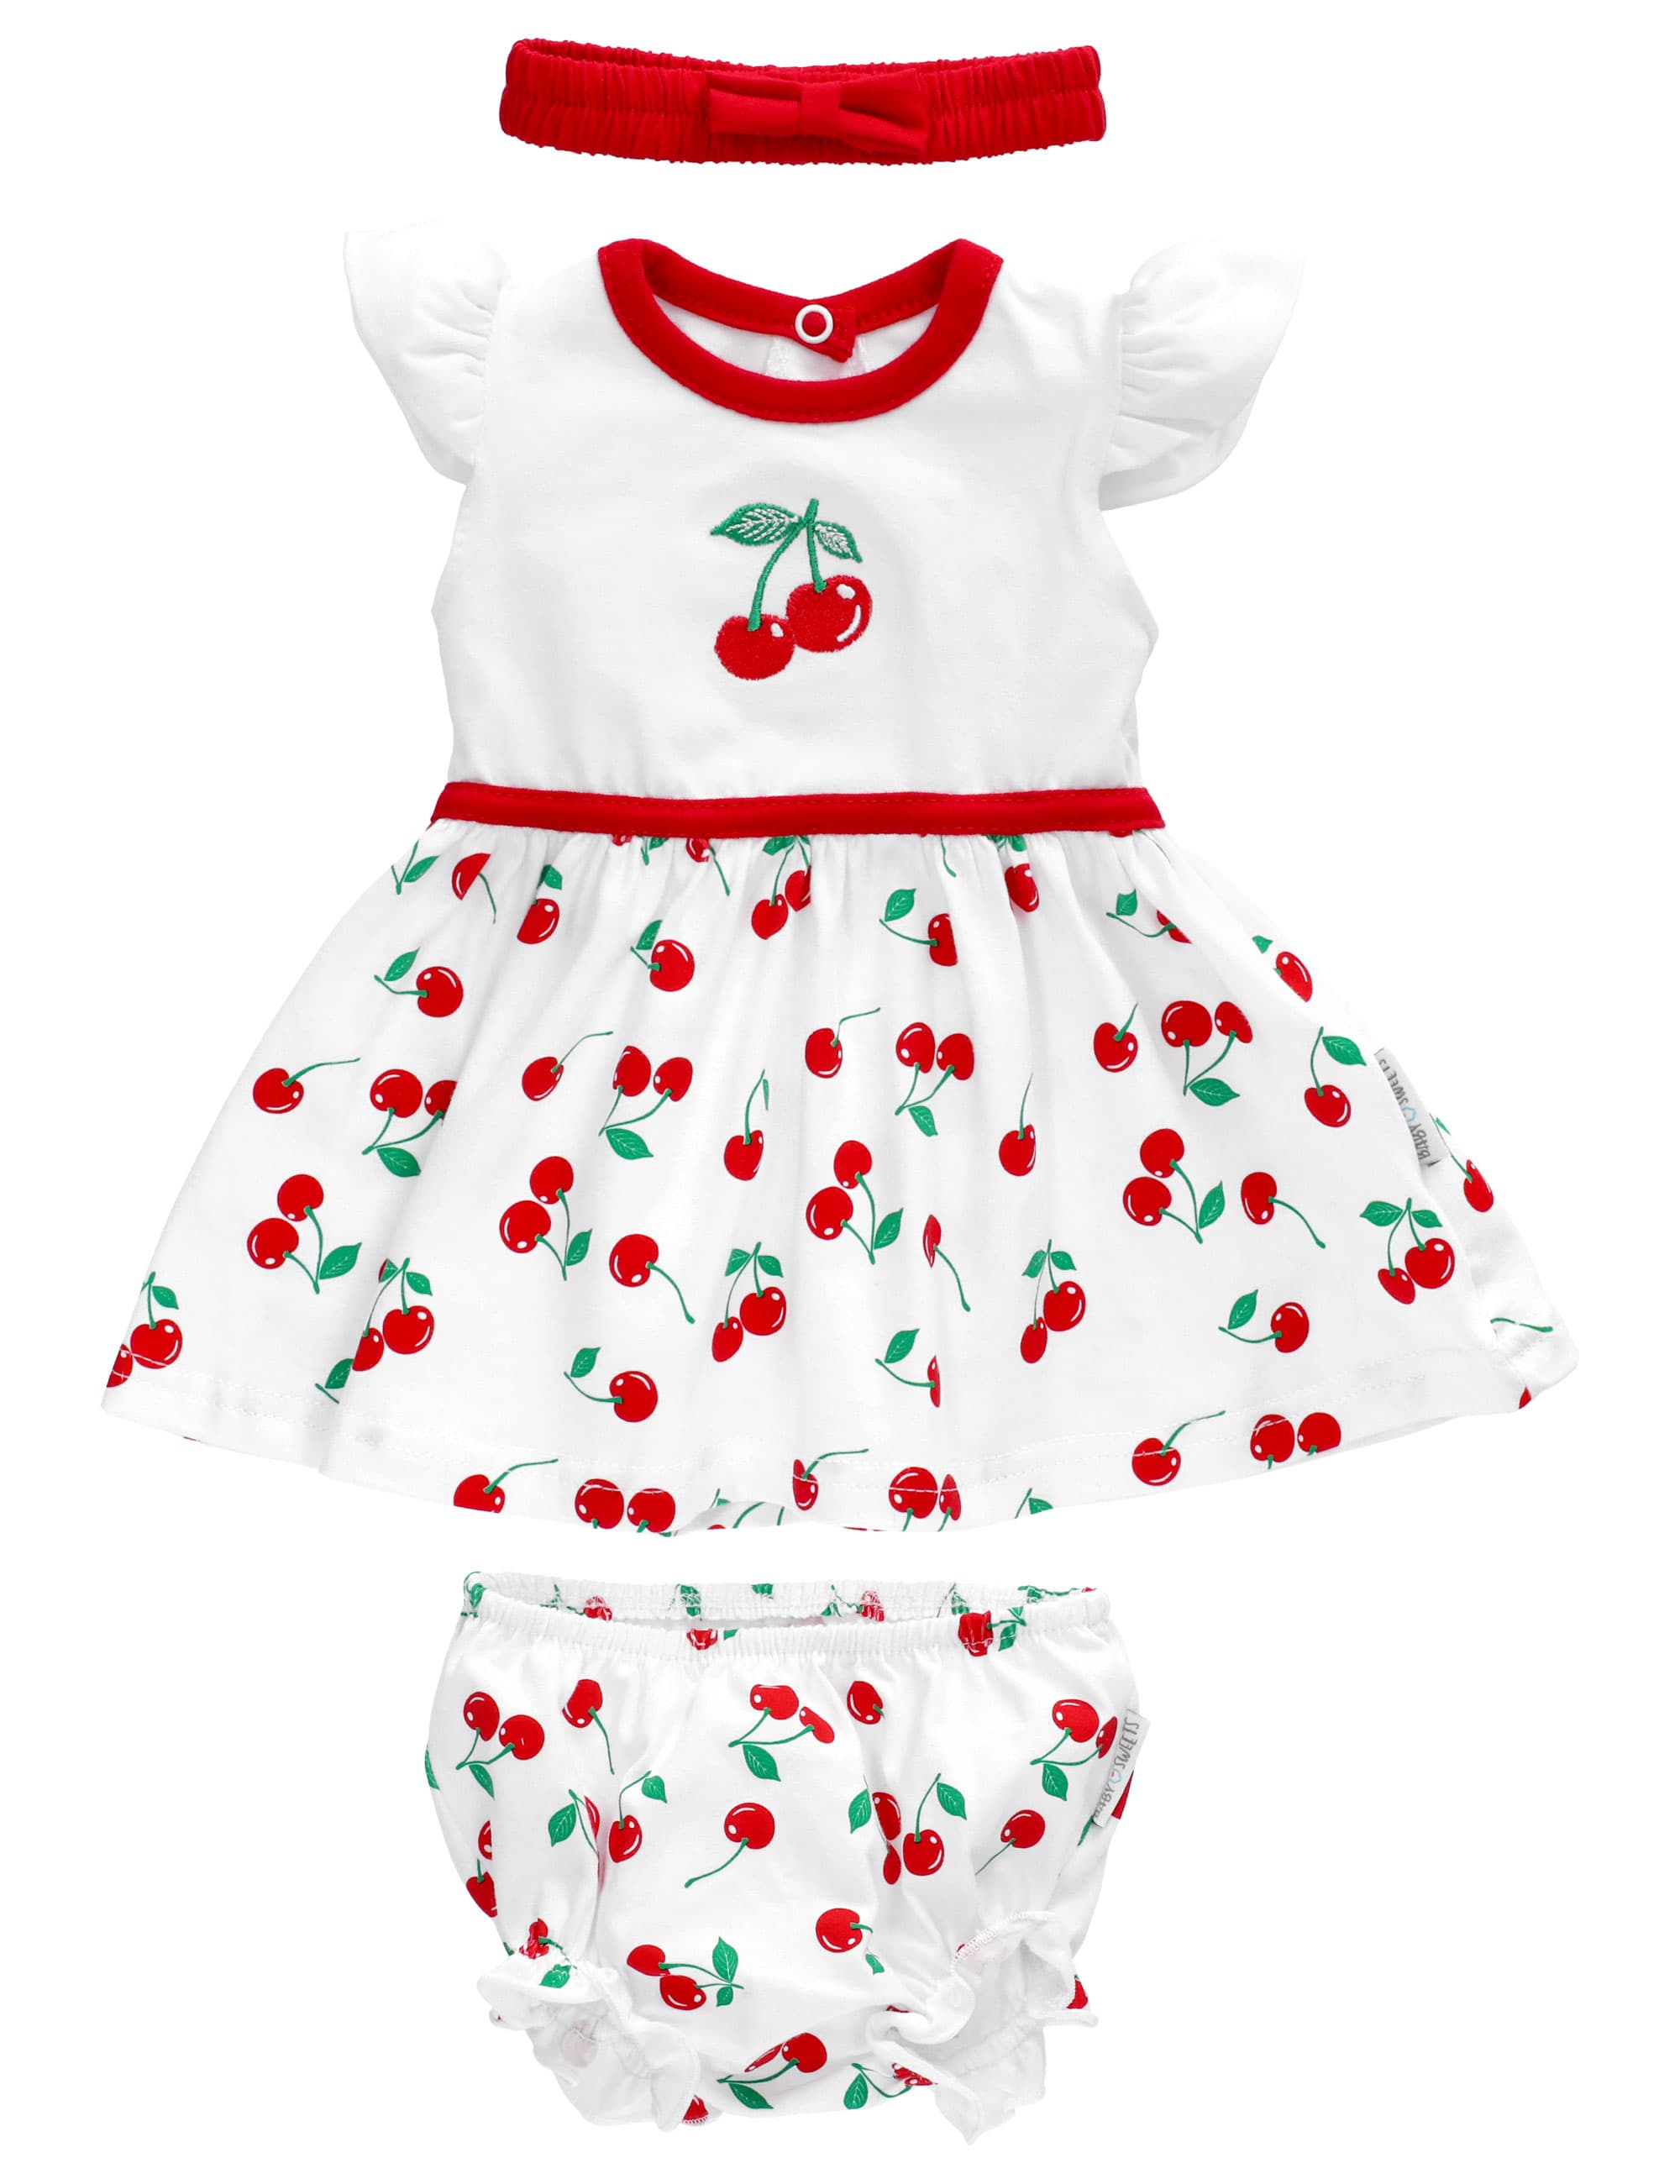 BabyPrem Baby Mädchen Kleidung Neugeborenes 6 Monate rosa weißes Kleid 